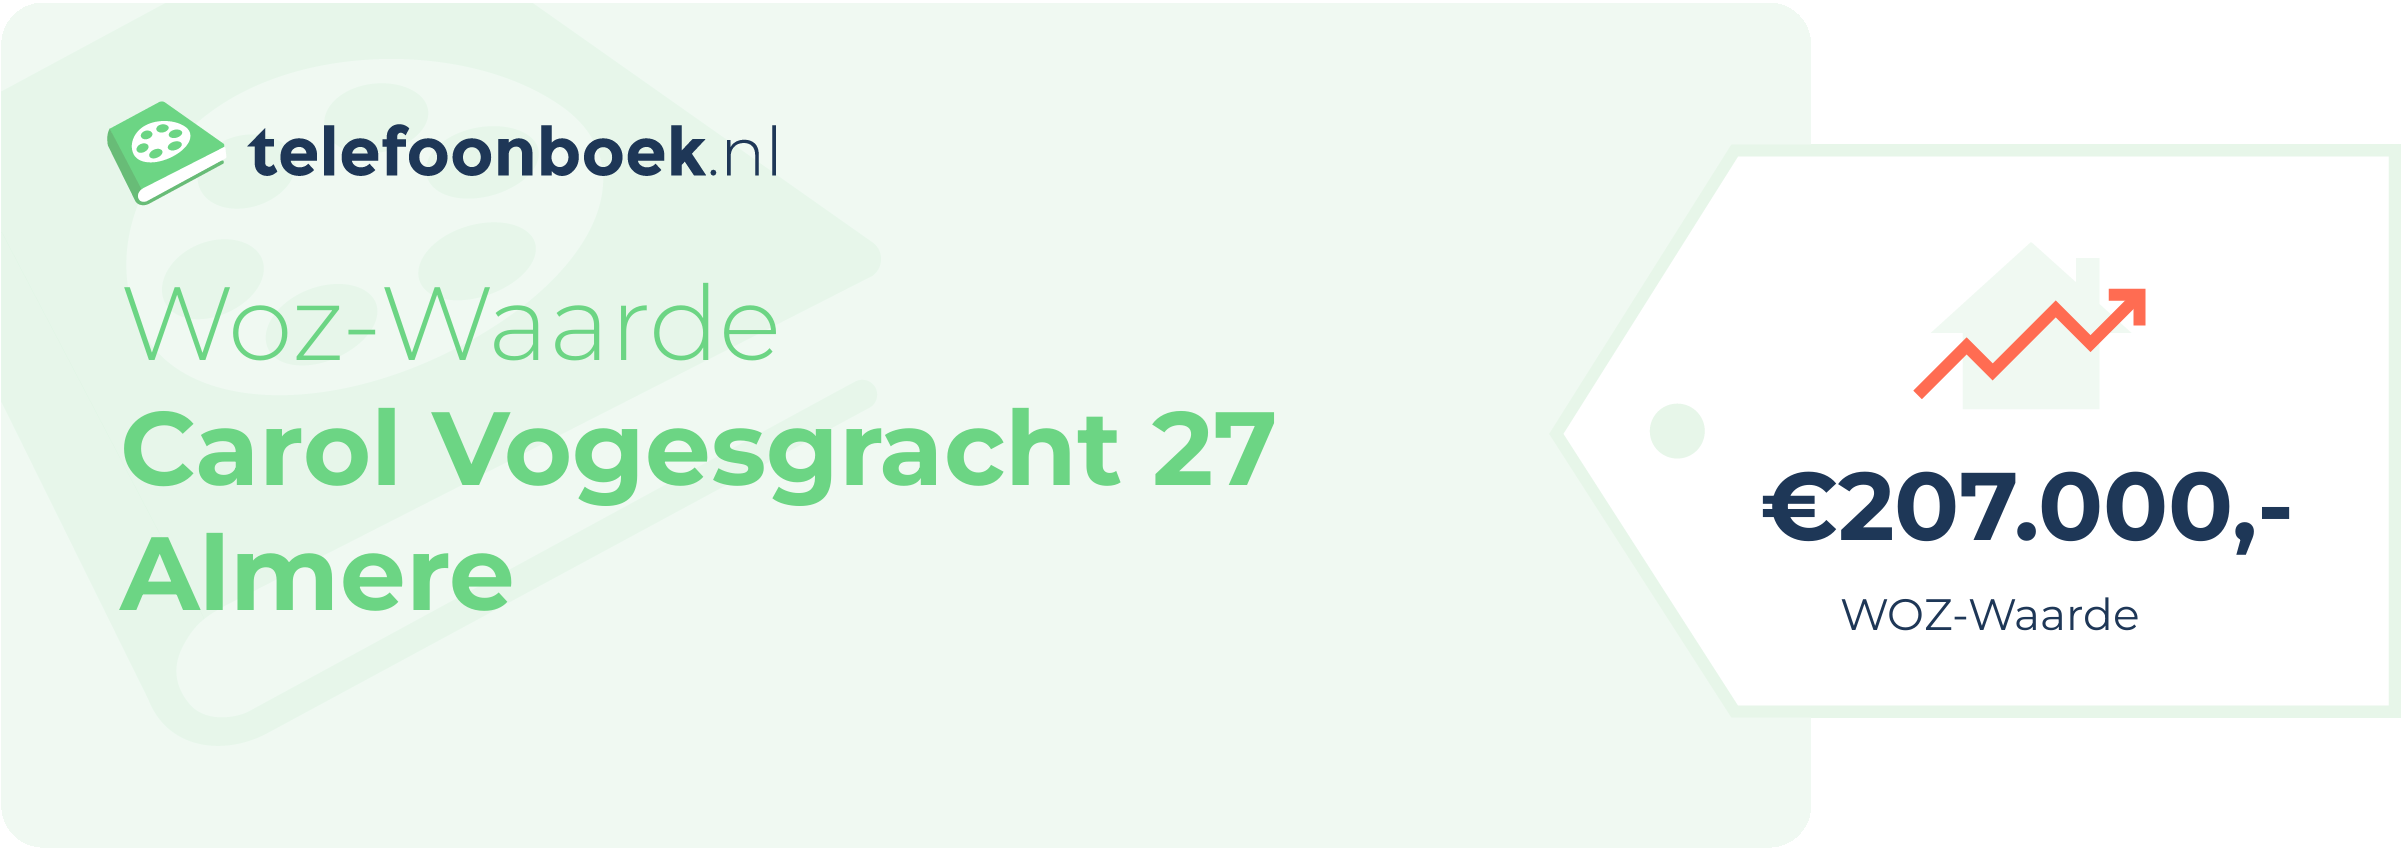 WOZ-waarde Carol Vogesgracht 27 Almere